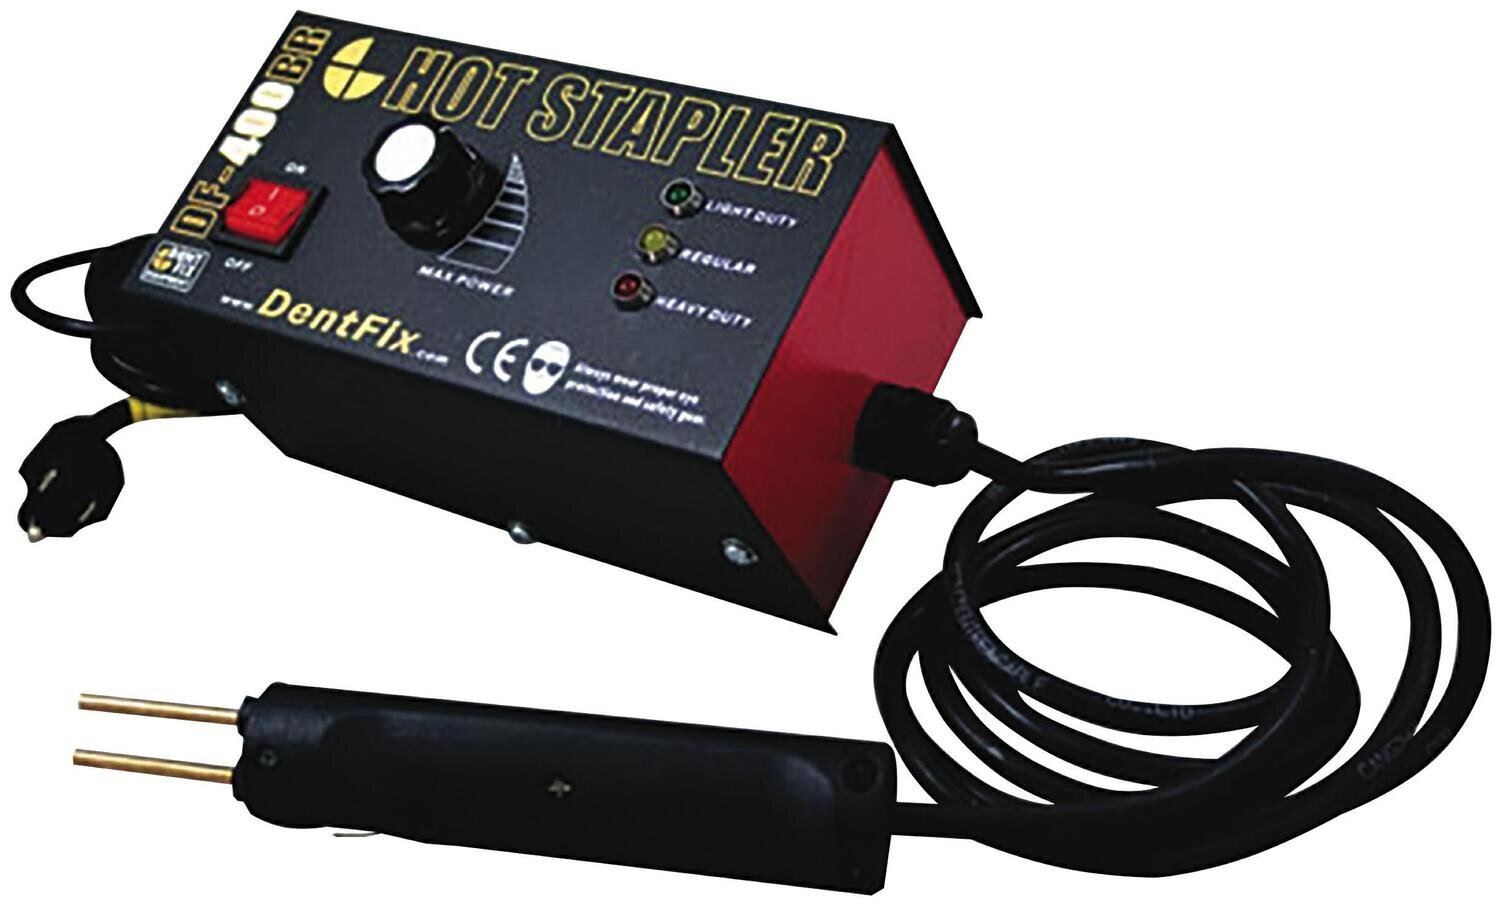 DFDF400BR - Hot Stapler - Basic Kit